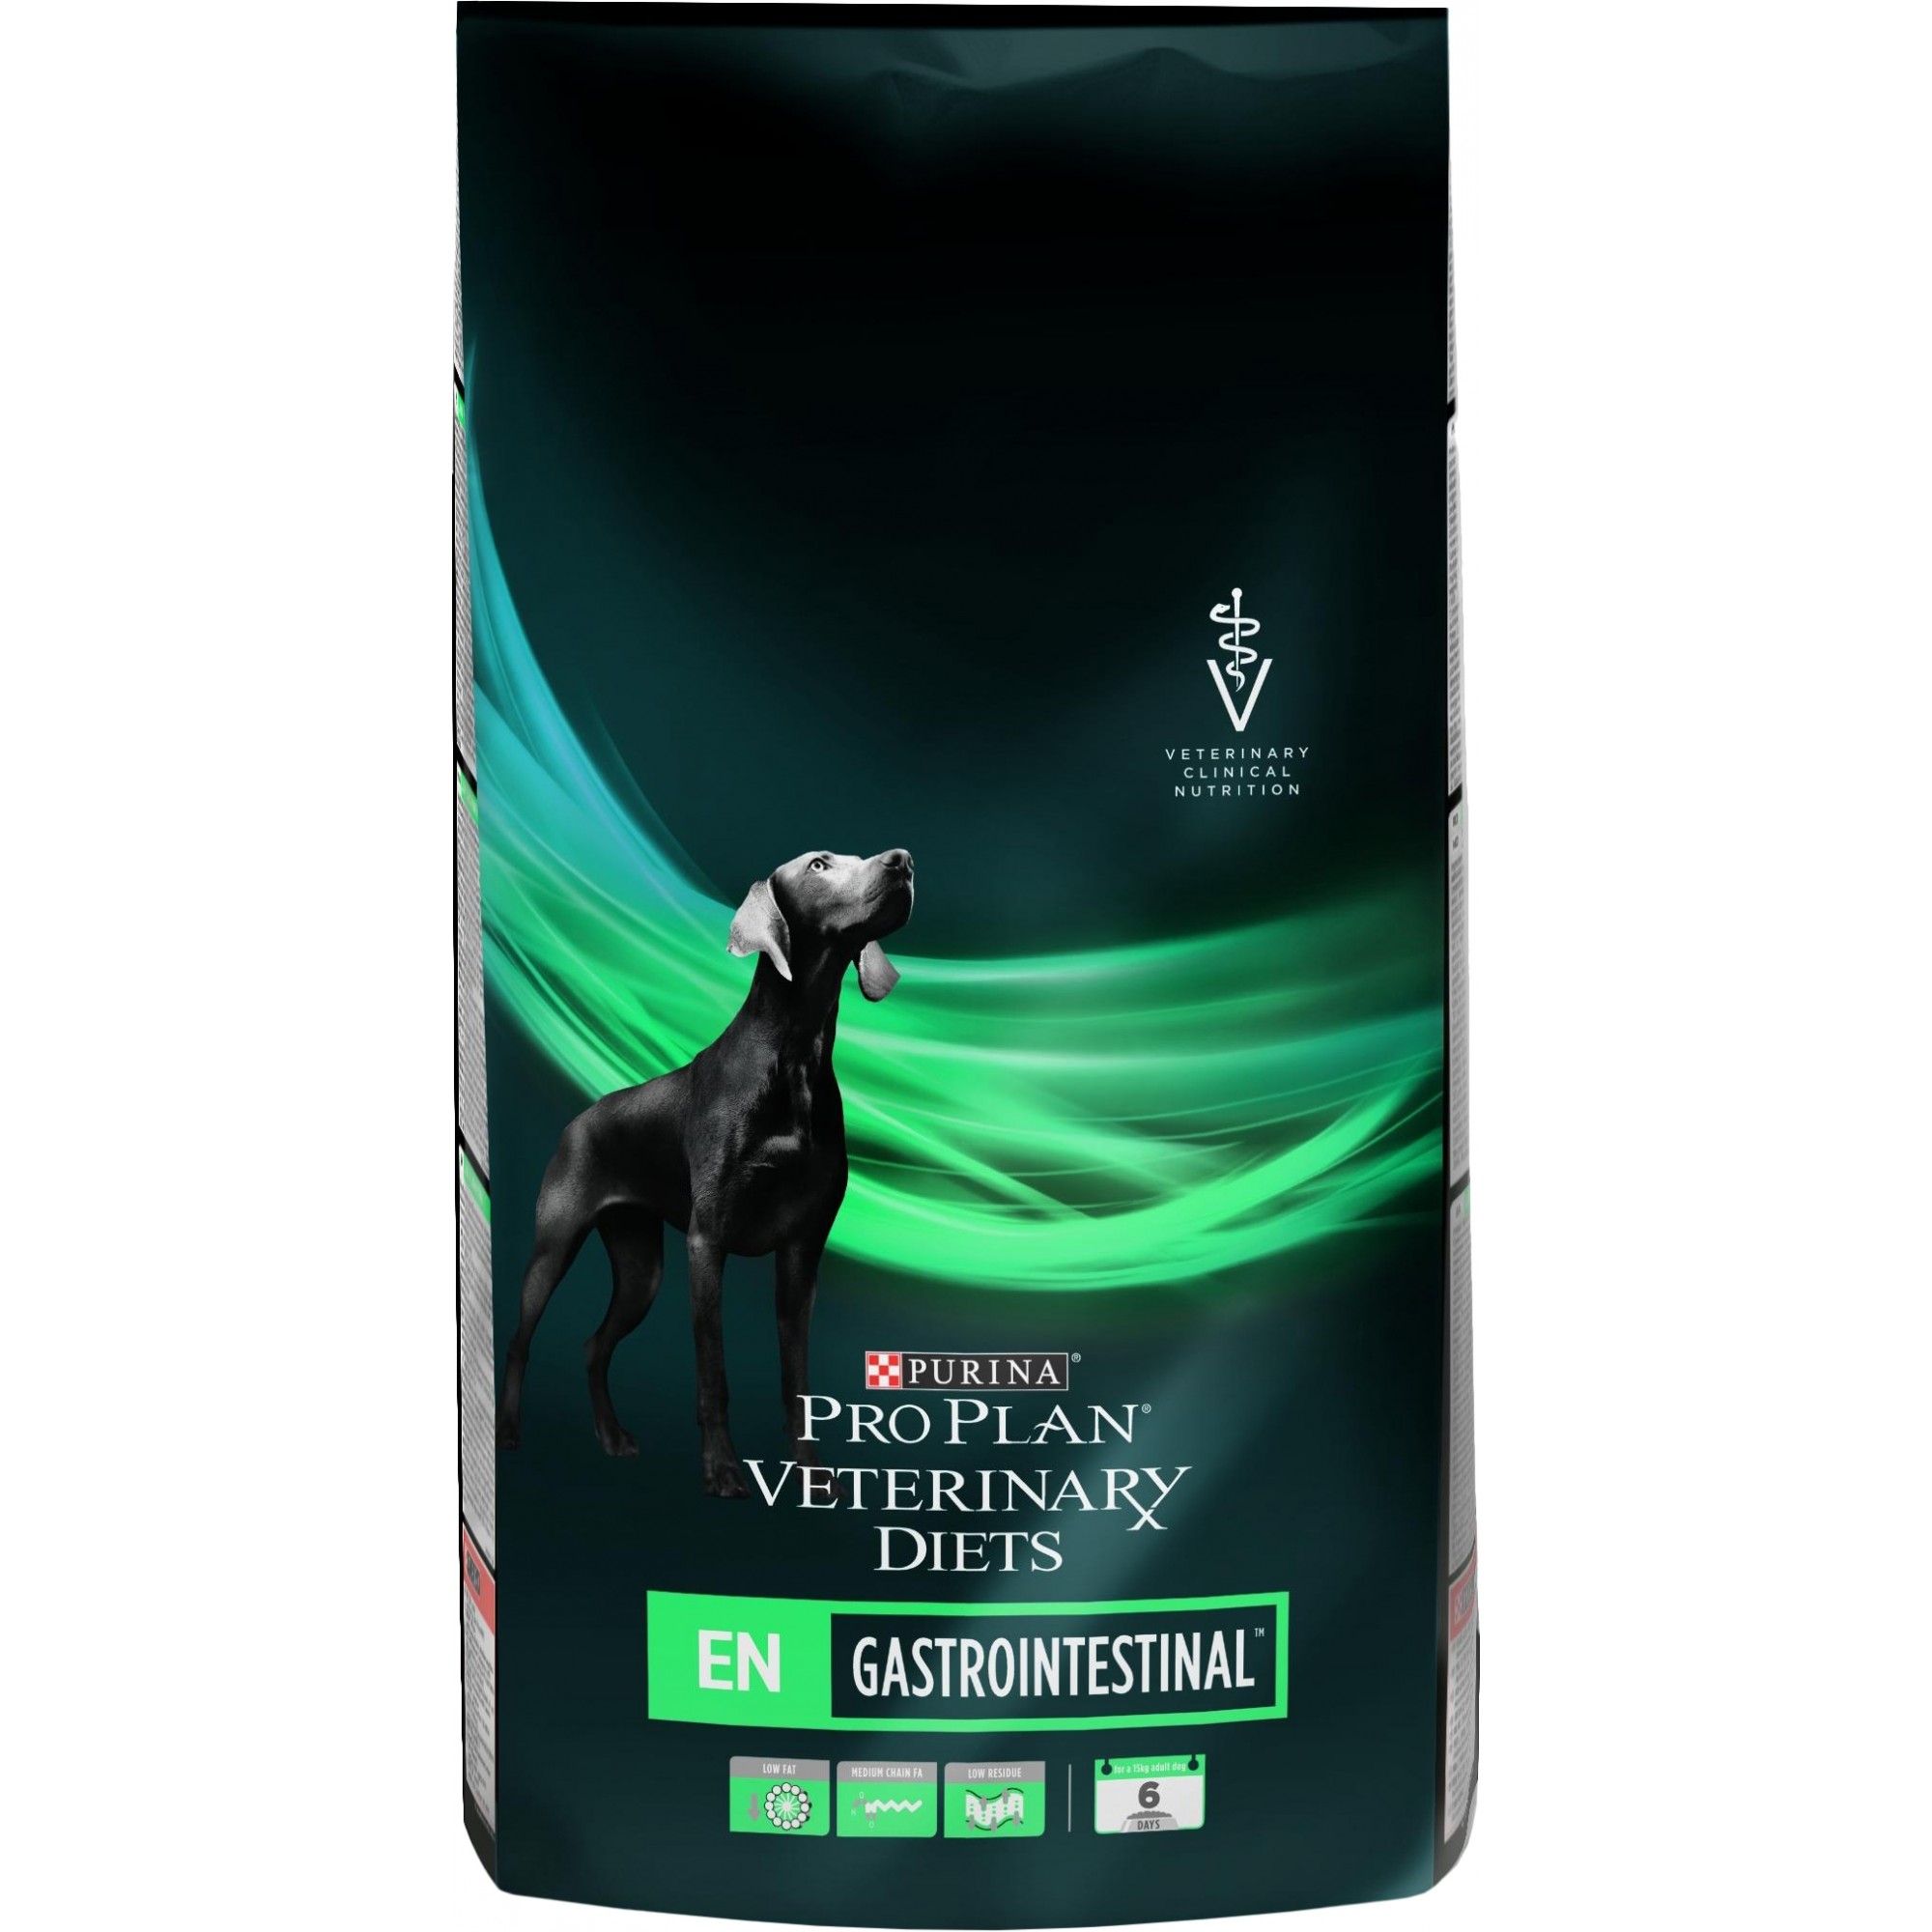 Pro Plan Veterinary Diets EN Gastrointestinal 1,5 кг (7613287587800) - зображення 1